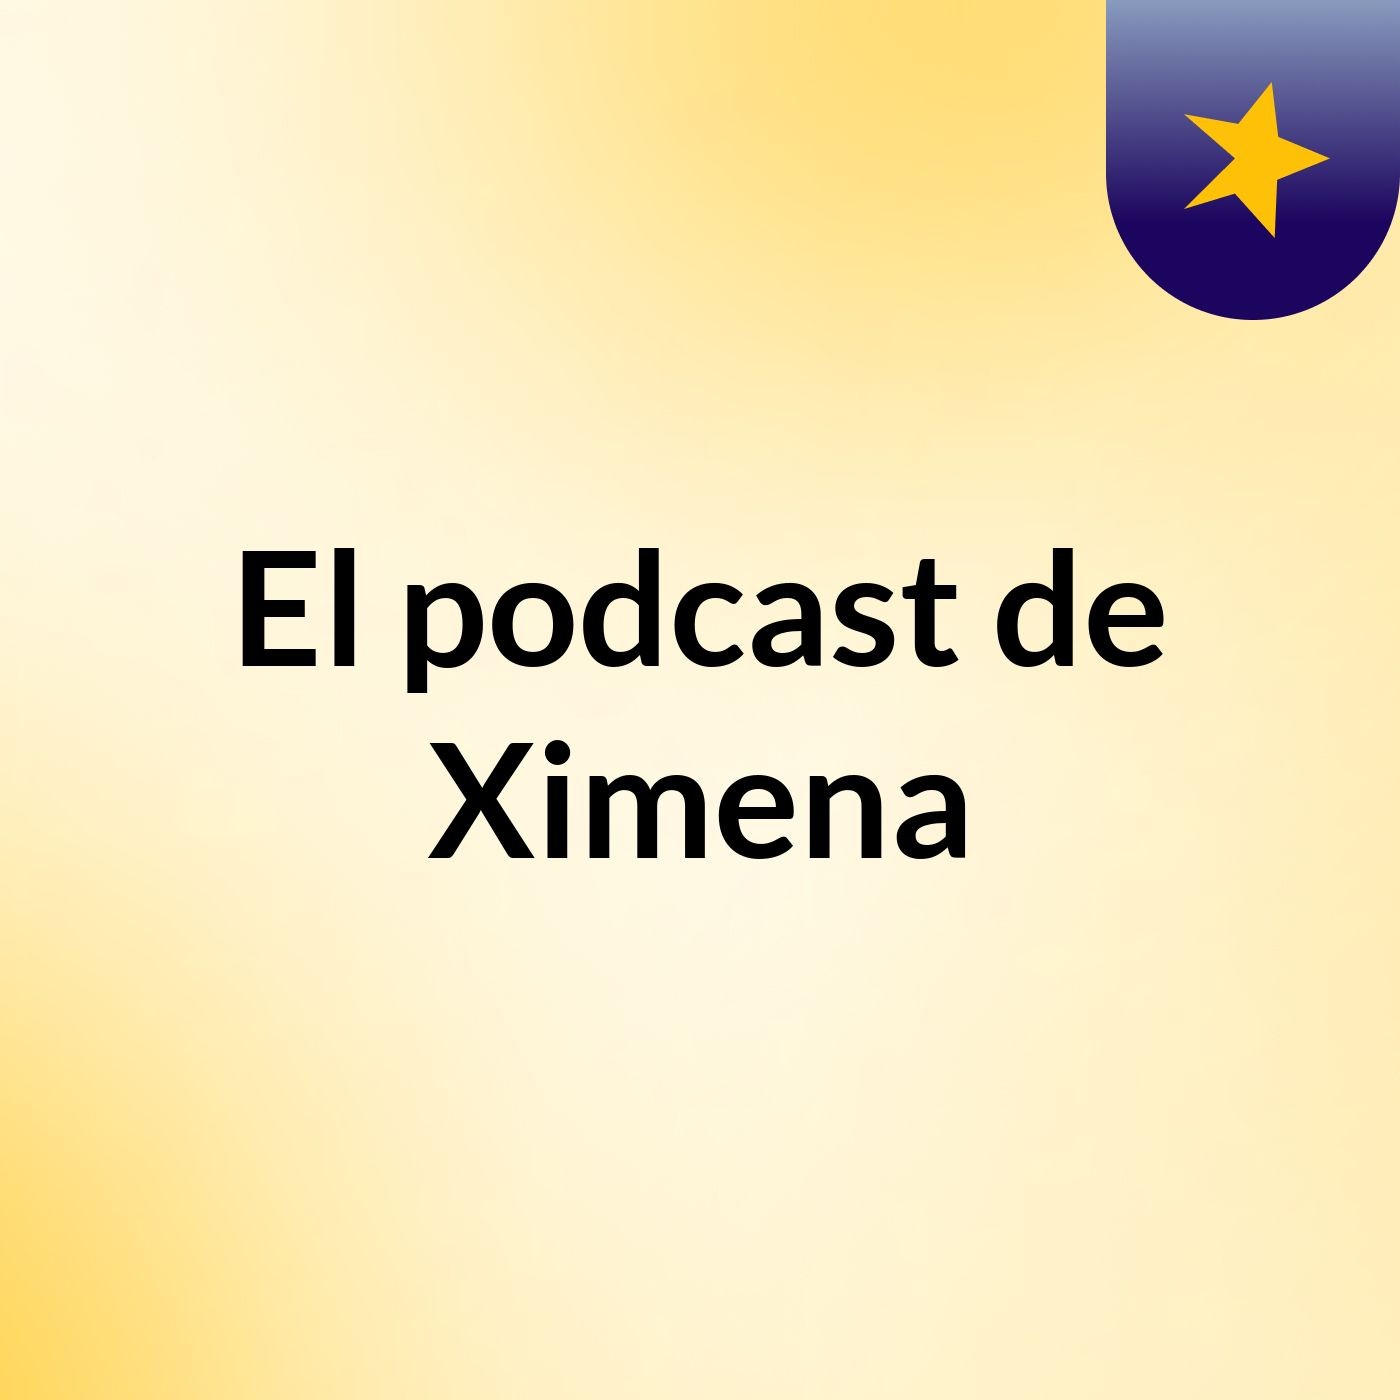 El podcast de Ximena